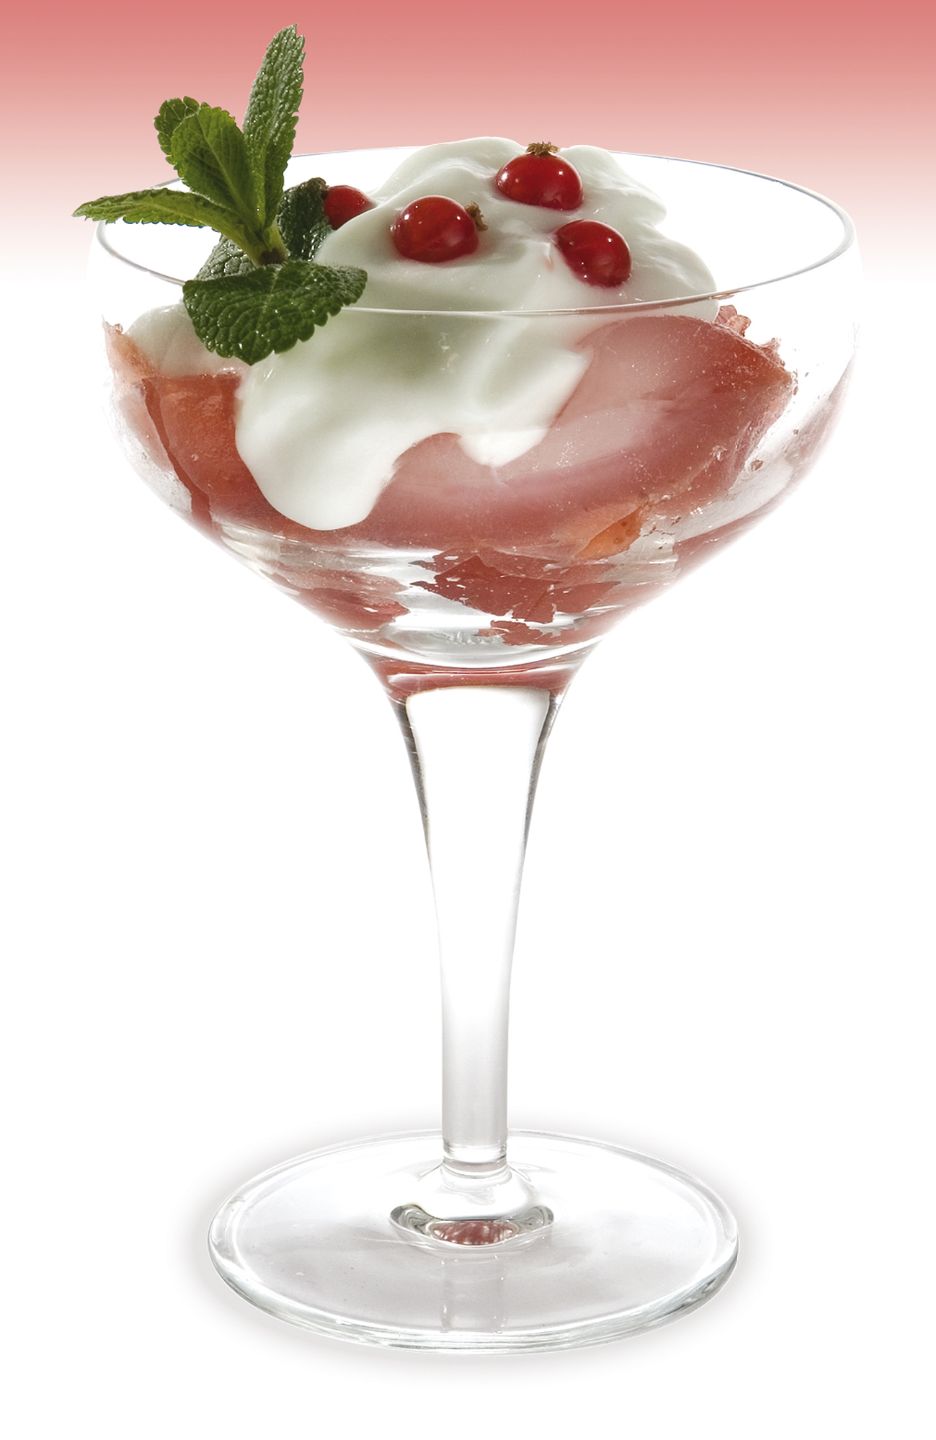 Strawberry flavour gelatine